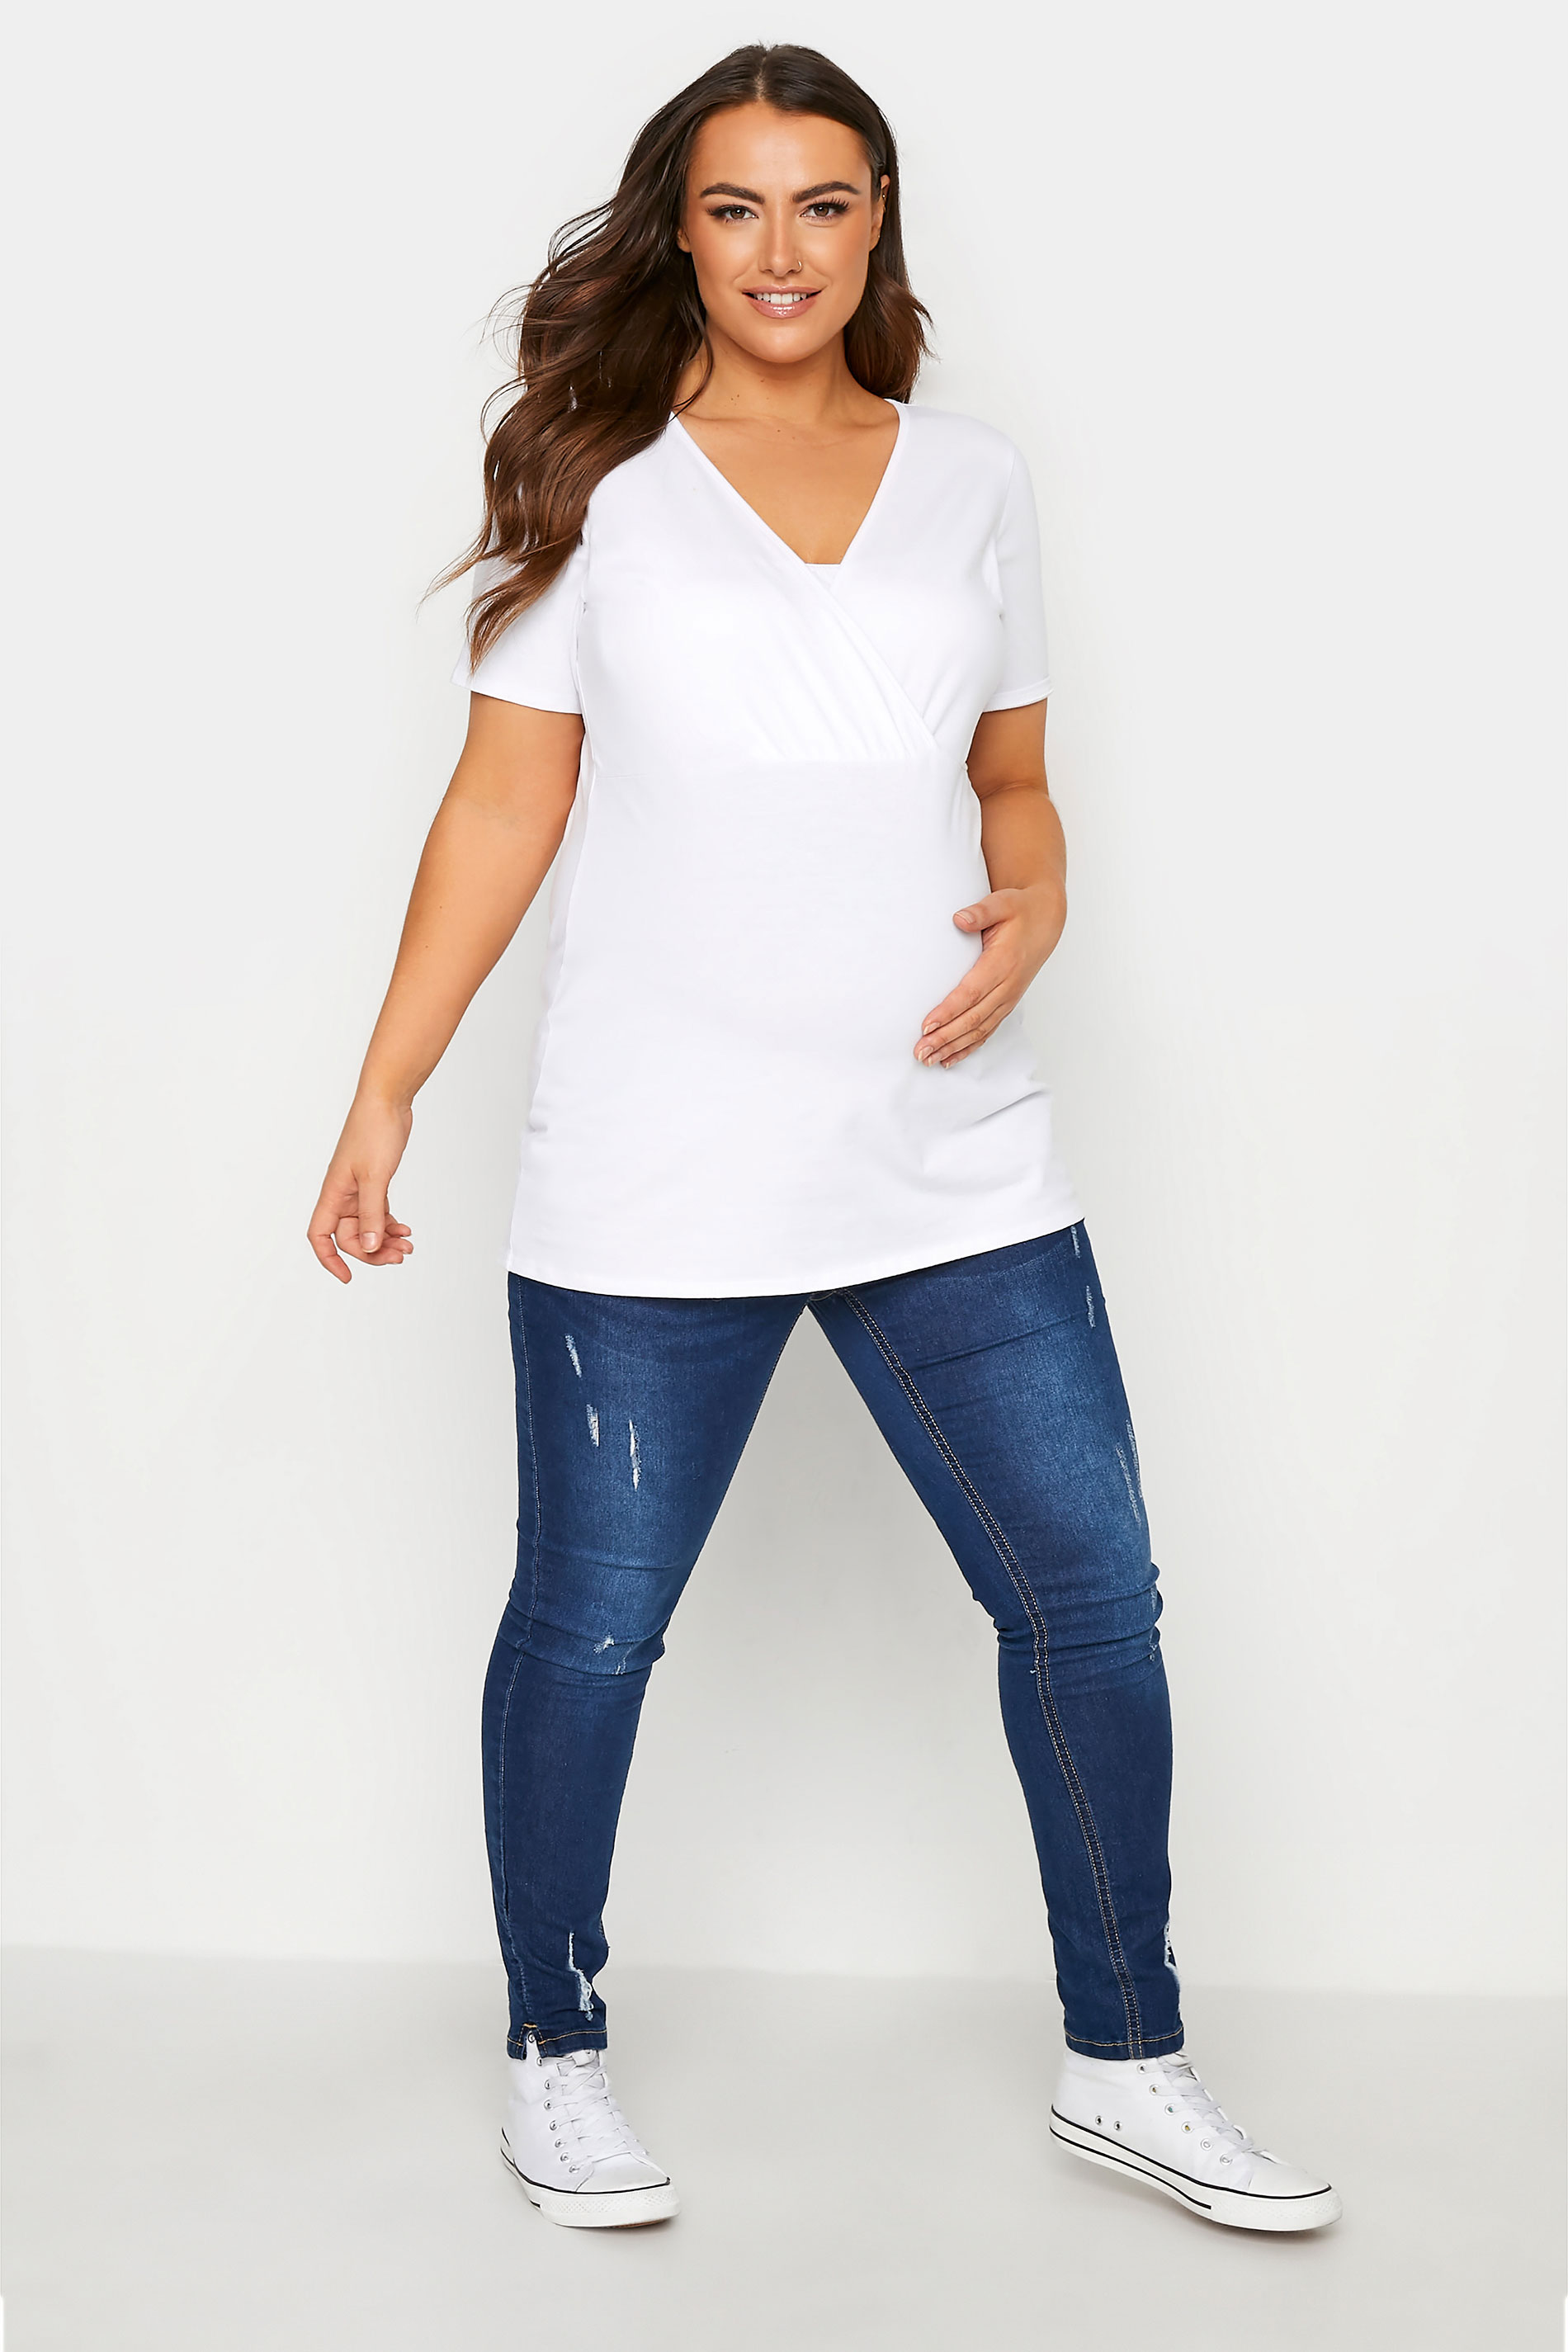 Grande taille  Vêtements de Grossesse Grande taille  Tops et t-shirts de grossesse | BUMP IT UP MATERNITY - Top Blanc en Coton d'Allaitement - WY59034